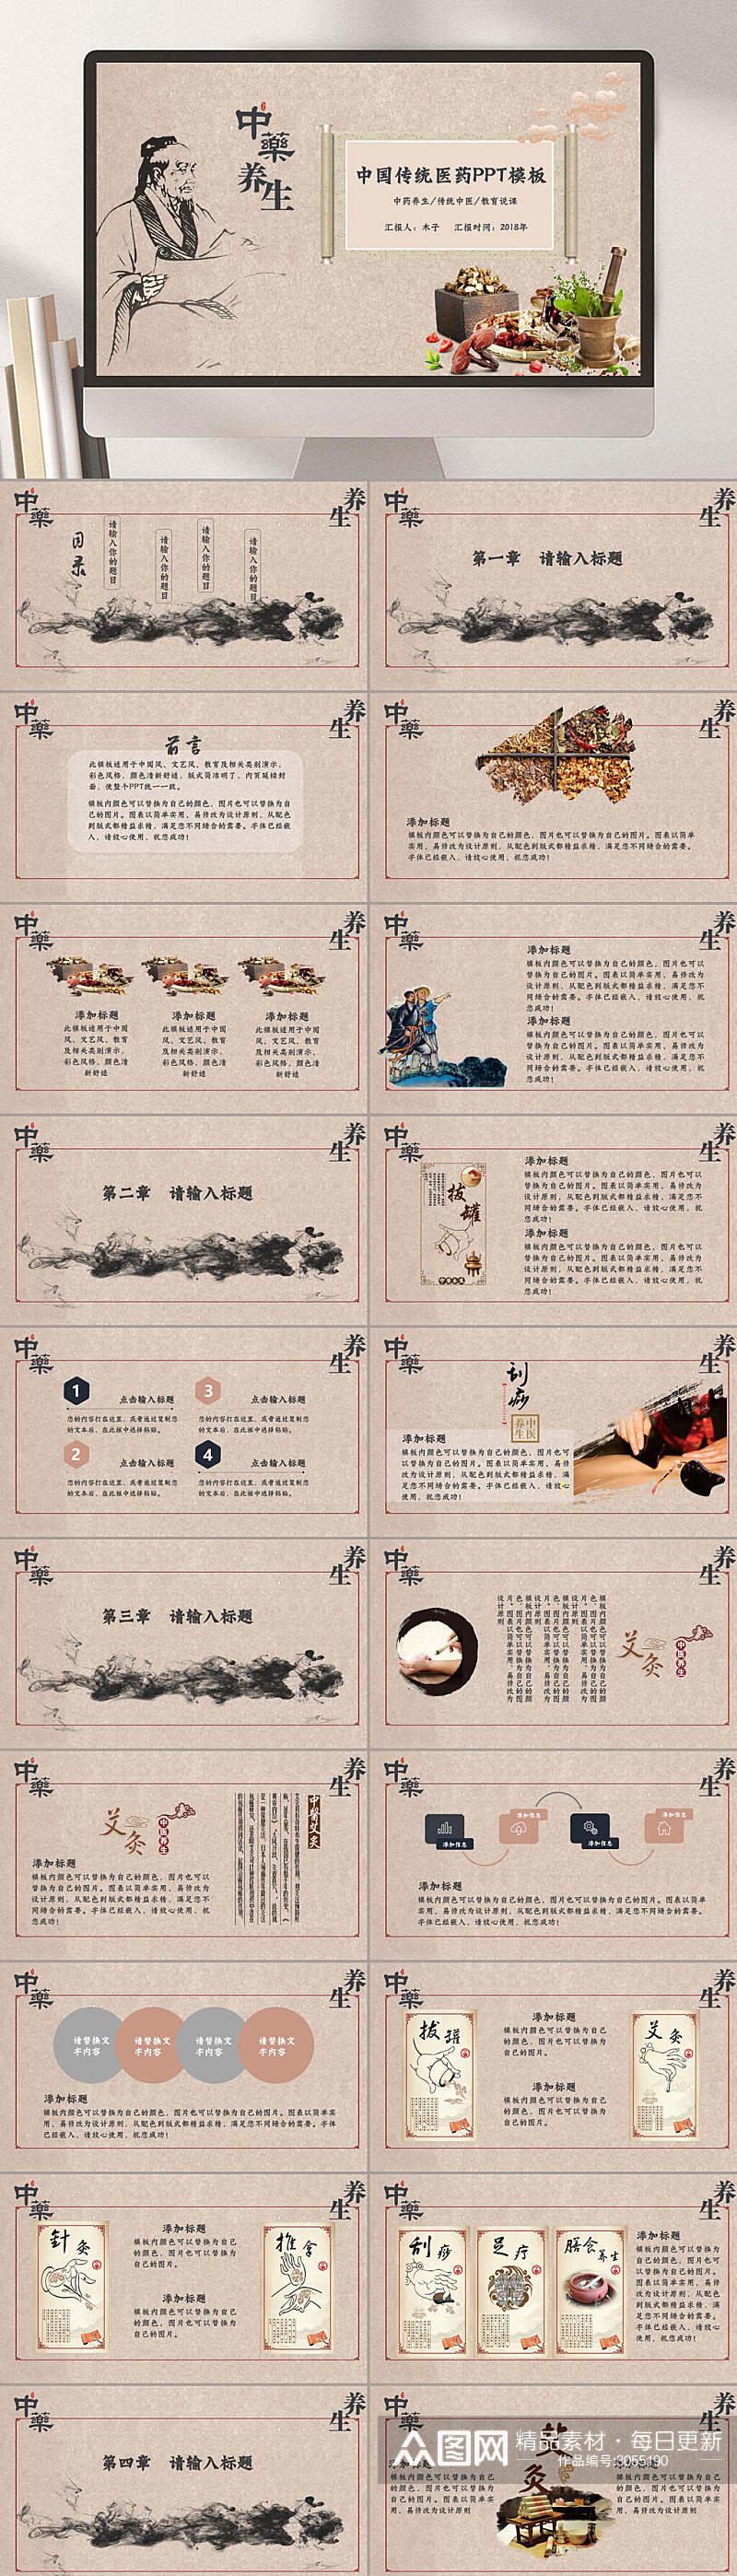 创意中国风课件中国传统医药养生学校PPT素材